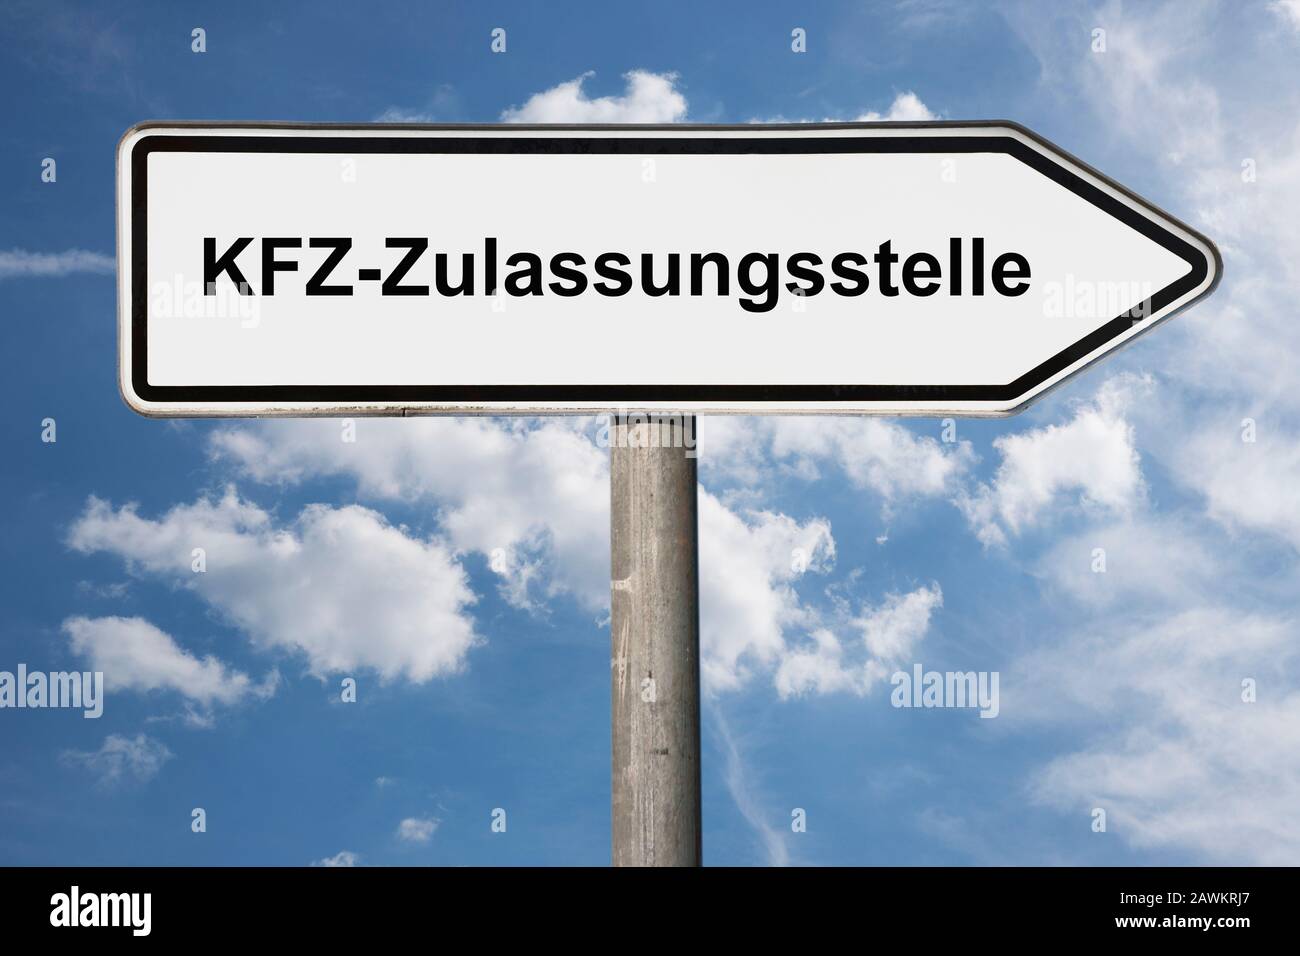 Detailfoto eines Wegweisers mit der Aufschrift KFZ-Zulaufstelle (Kfz-Zulassungsstelle) Stockfoto